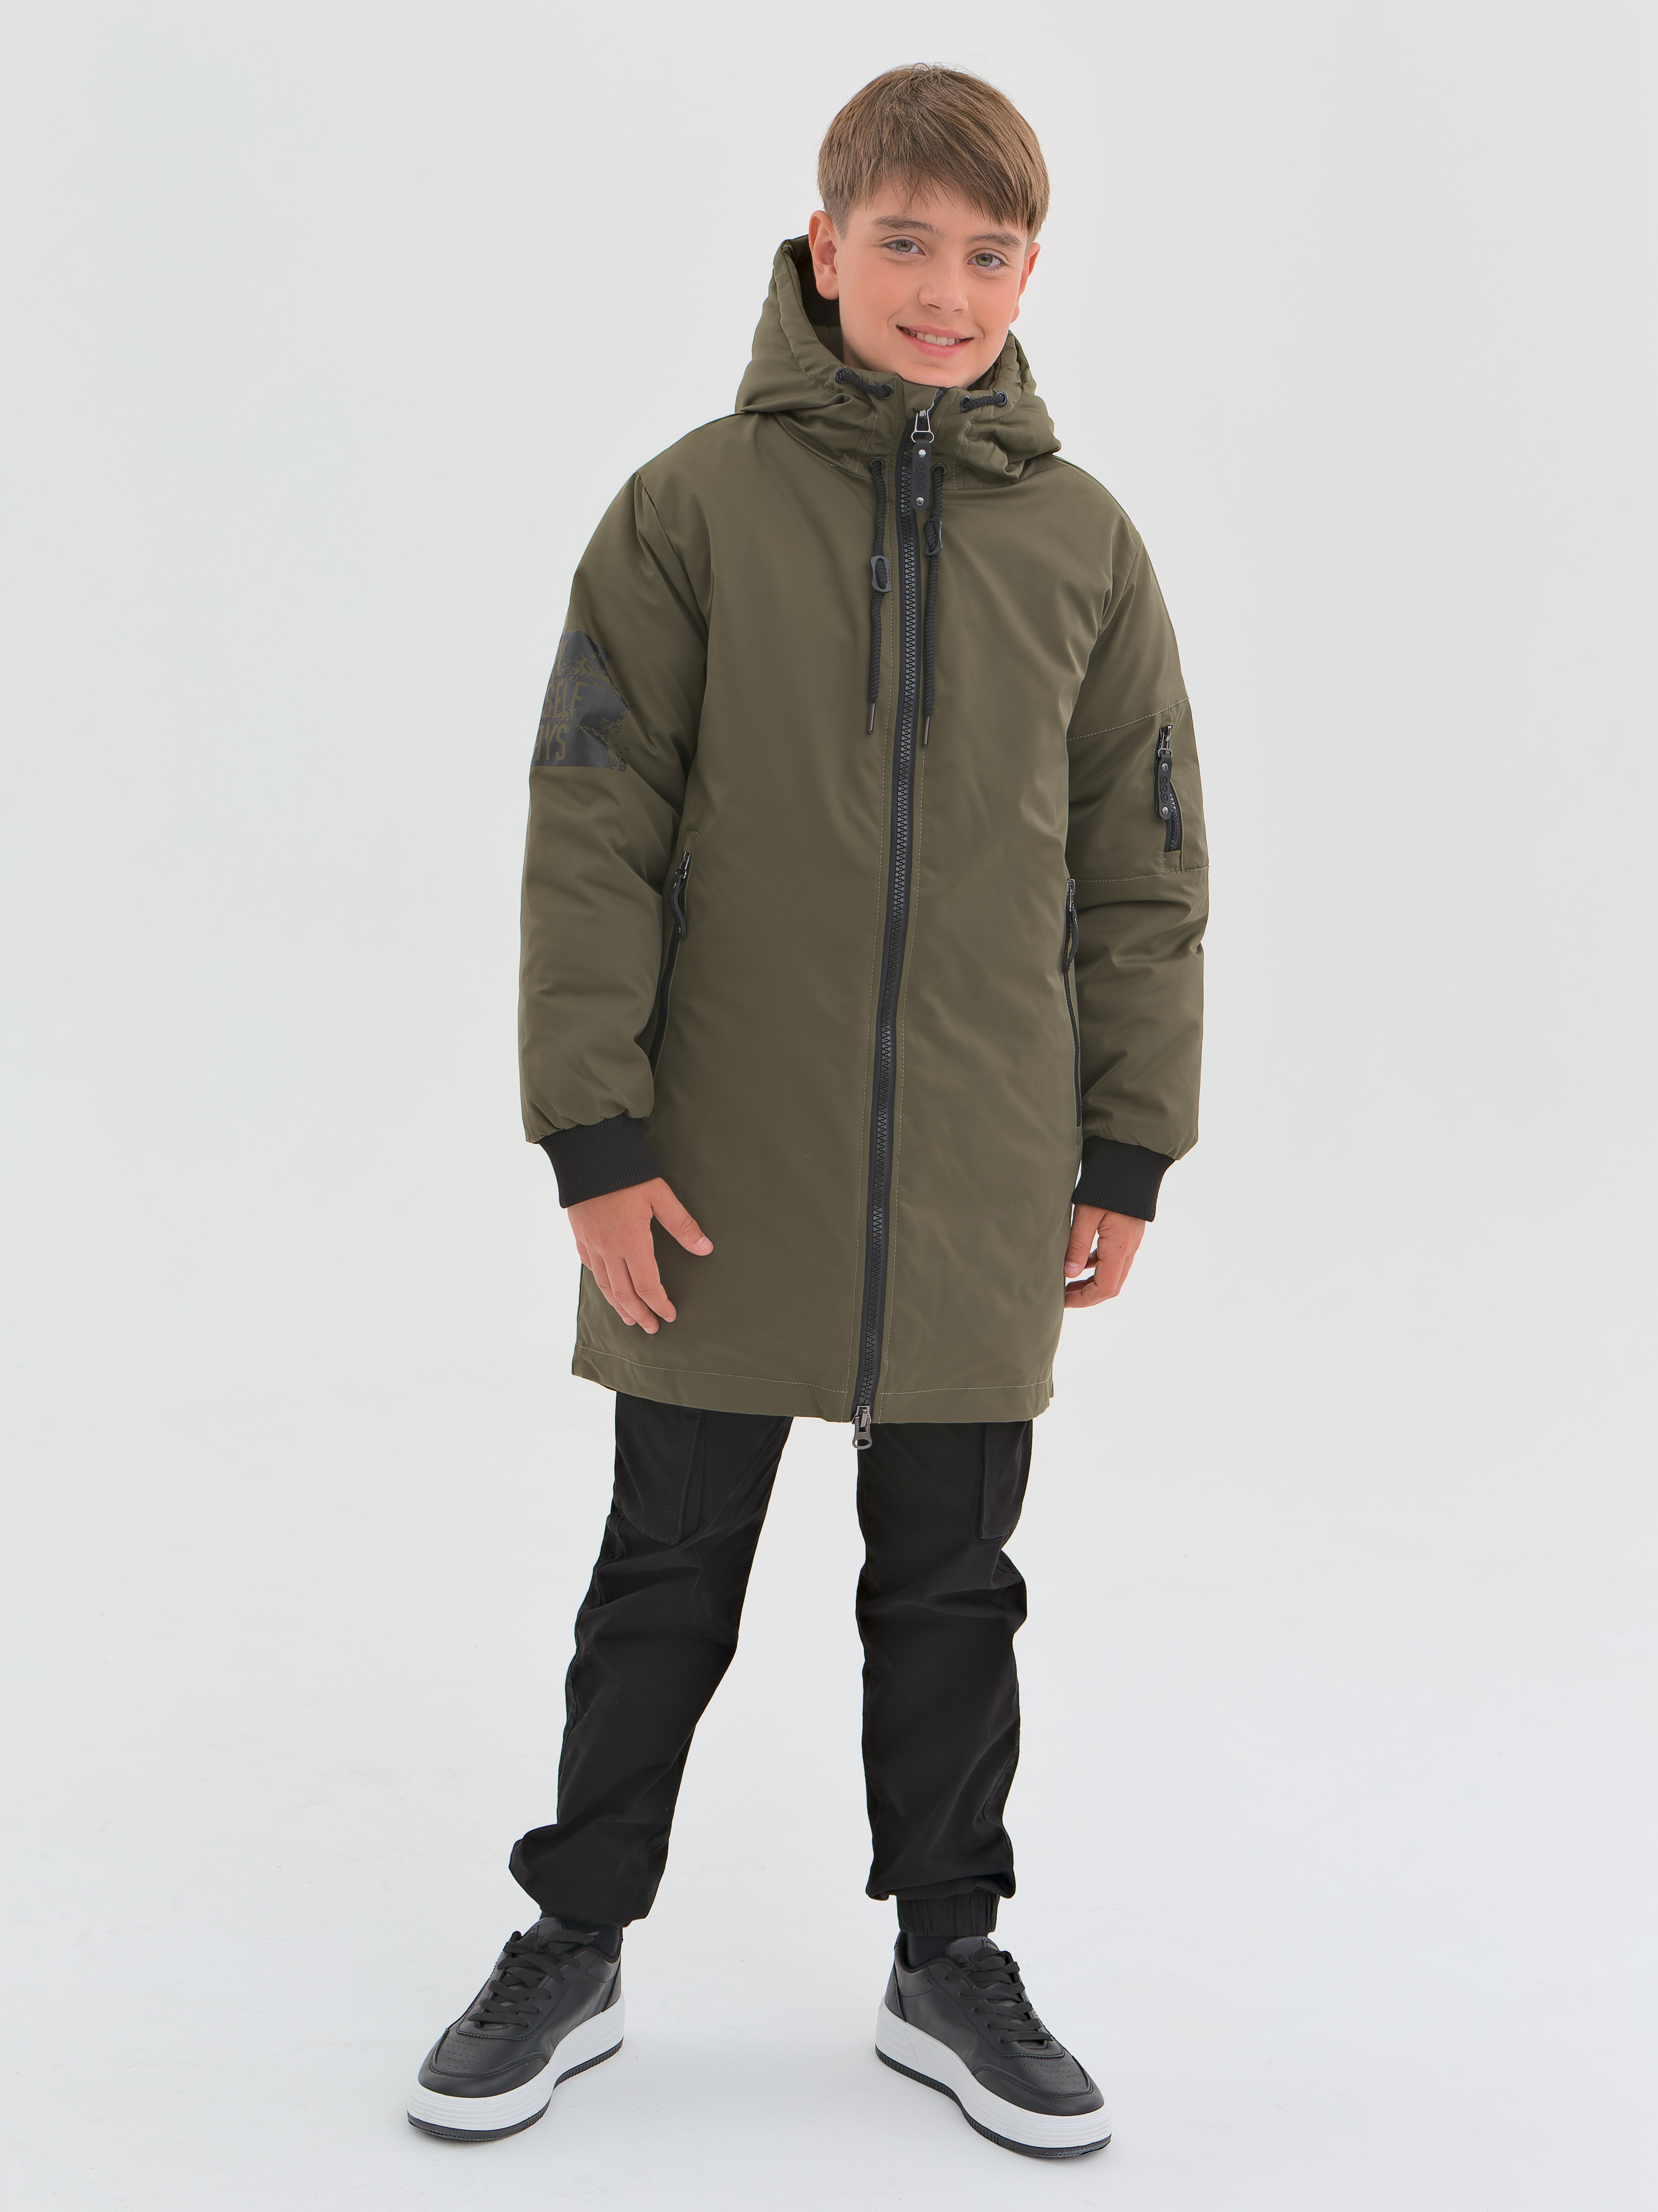 Куртка детская WBR 68-001, хаки, 134 куртка пуховик а хаки diesel детская